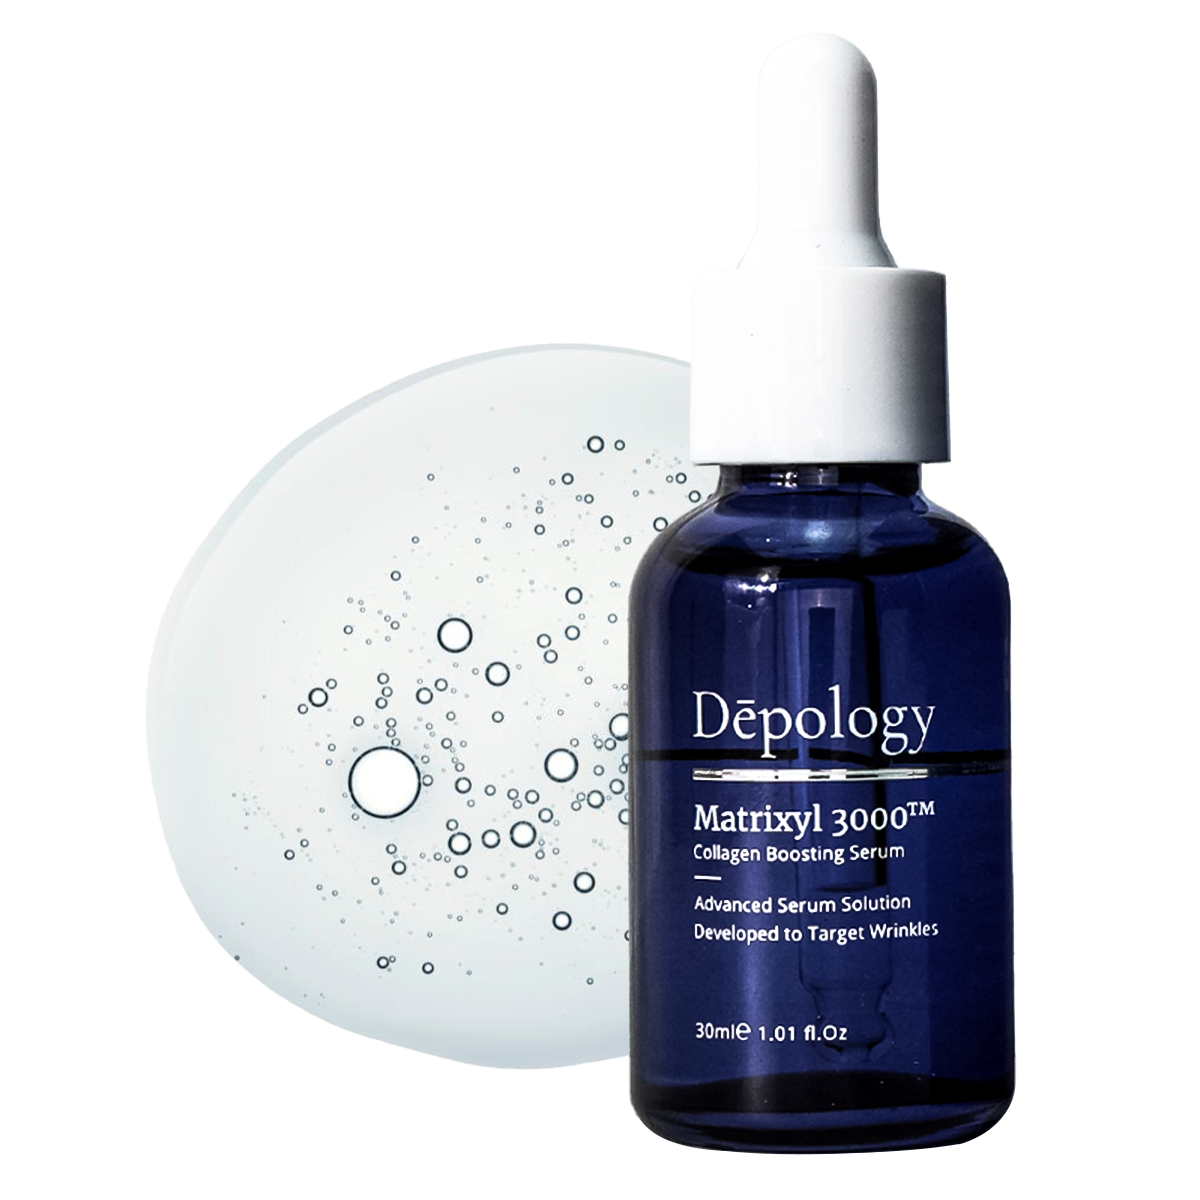 Depology Matrixyl 3000 Collagen Boosting Serum for anti aging skin 